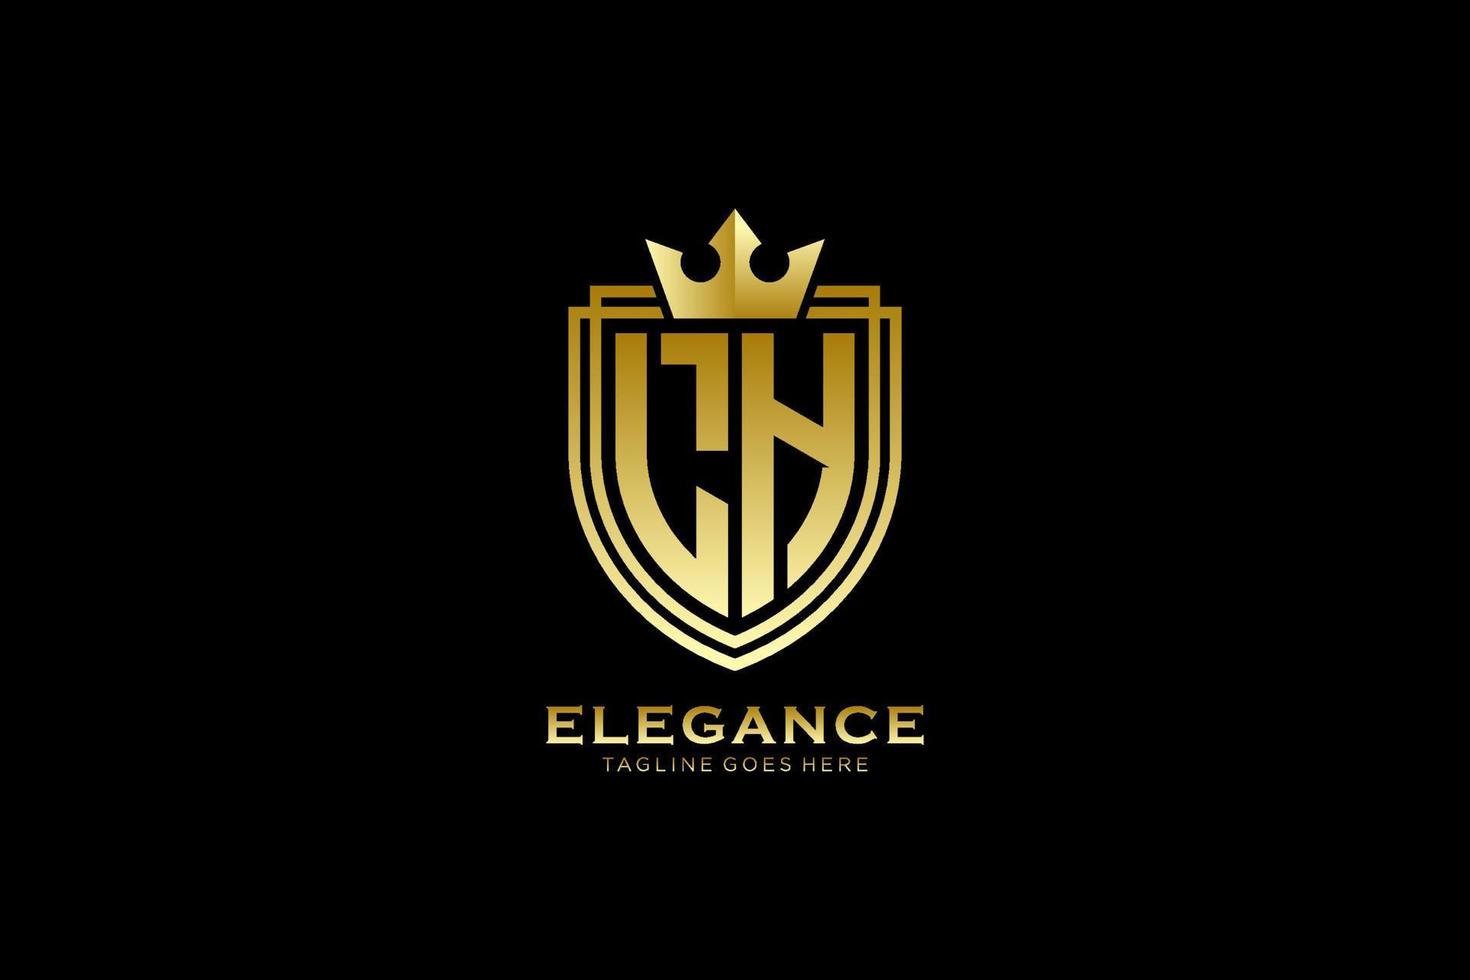 logo monogramme de luxe élégant initial lh ou modèle de badge avec volutes et couronne royale - parfait pour les projets de marque de luxe vecteur